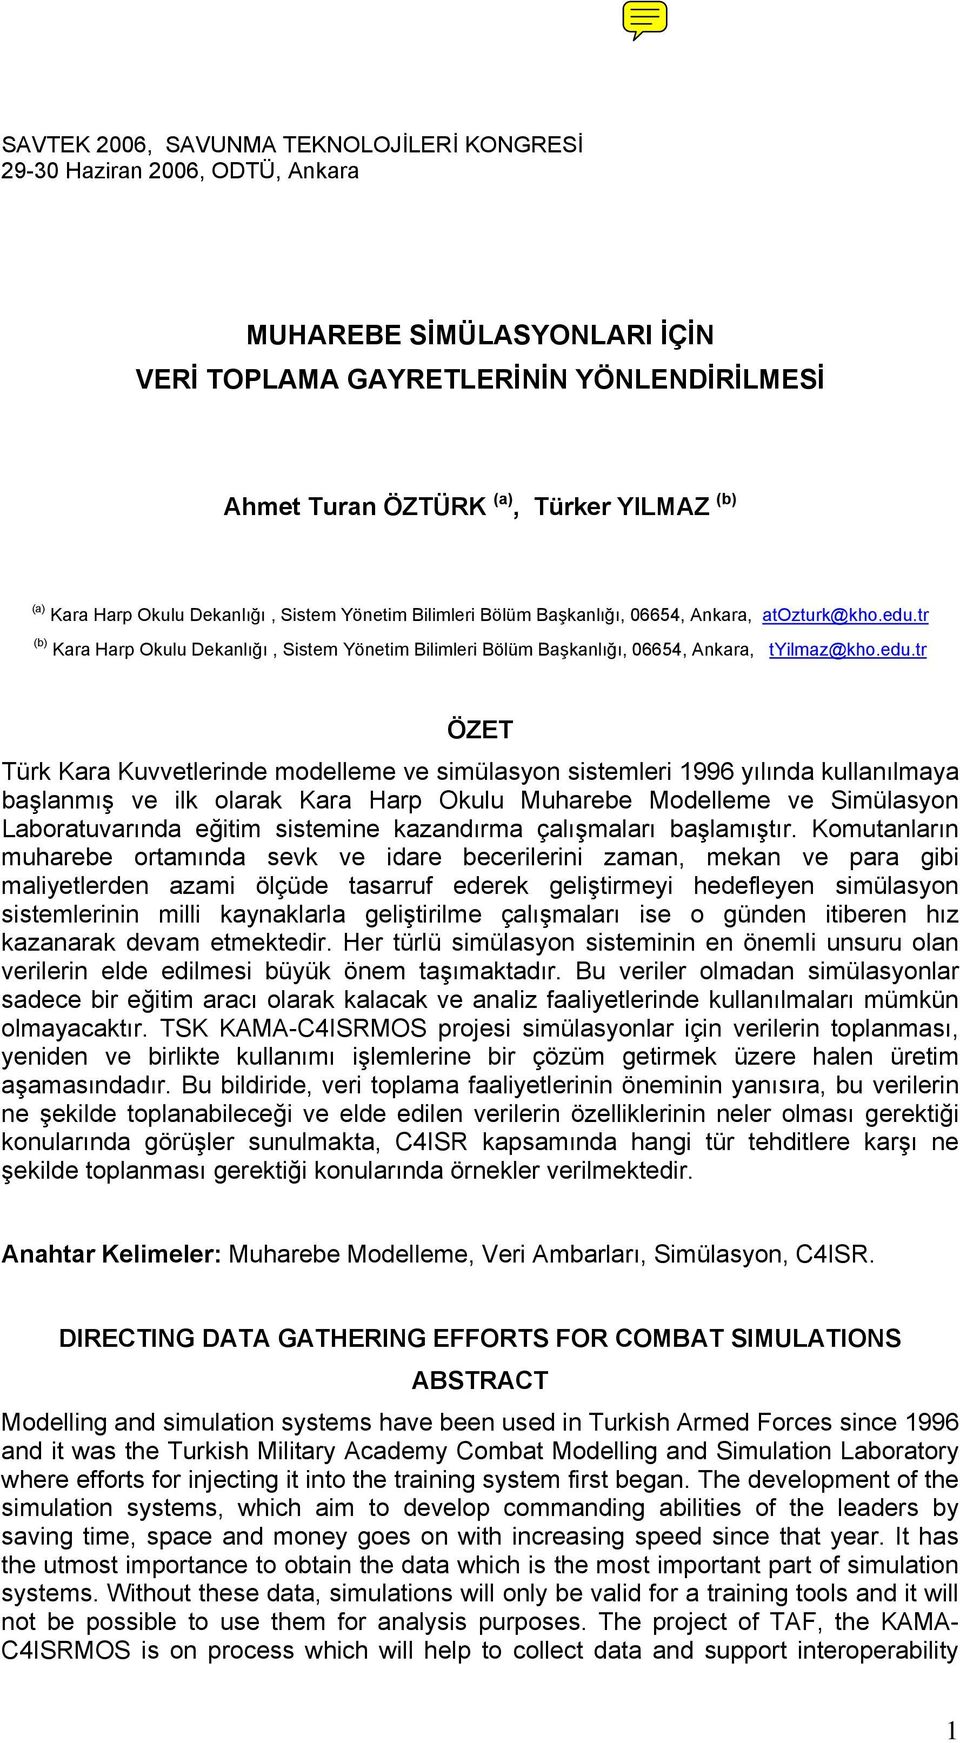 tr (b) Kara Harp Okulu Dekanlığı, Sistem Yönetim Bilimleri Bölüm Başkanlığı, 06654, Ankara, tyilmaz@kho.edu.